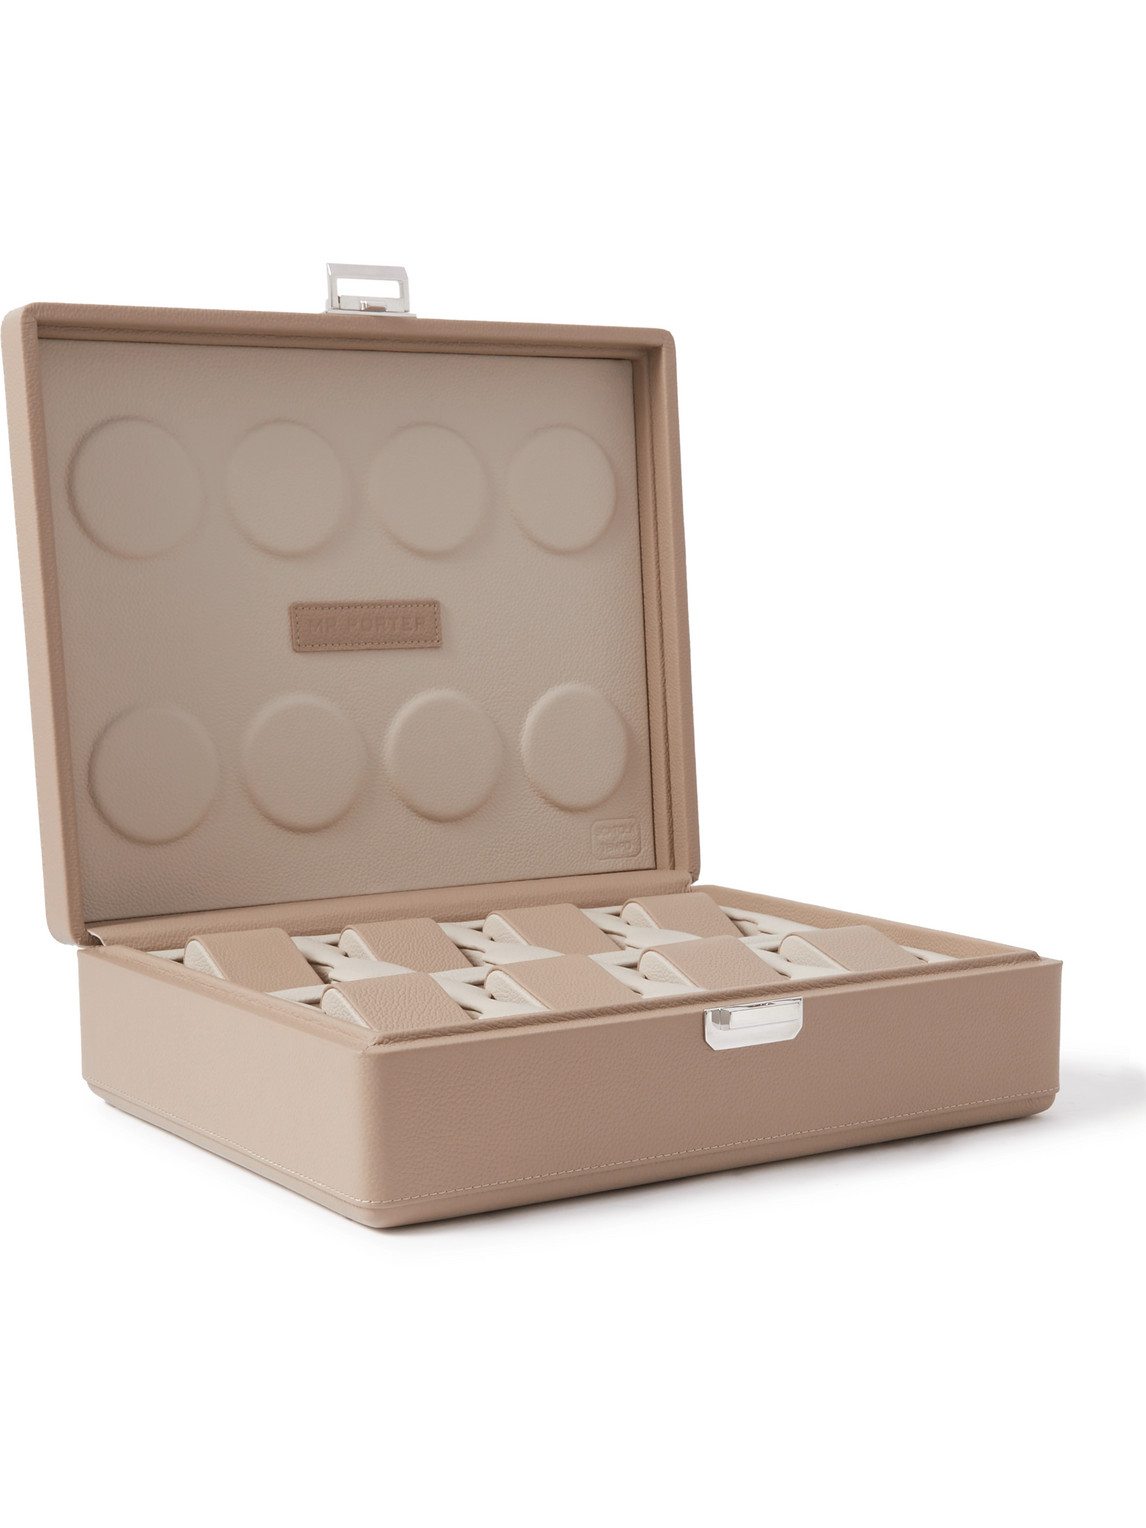 Scatola Del Tempo Valigetta 8 Full-grain Leather Watch Box In Neutrals